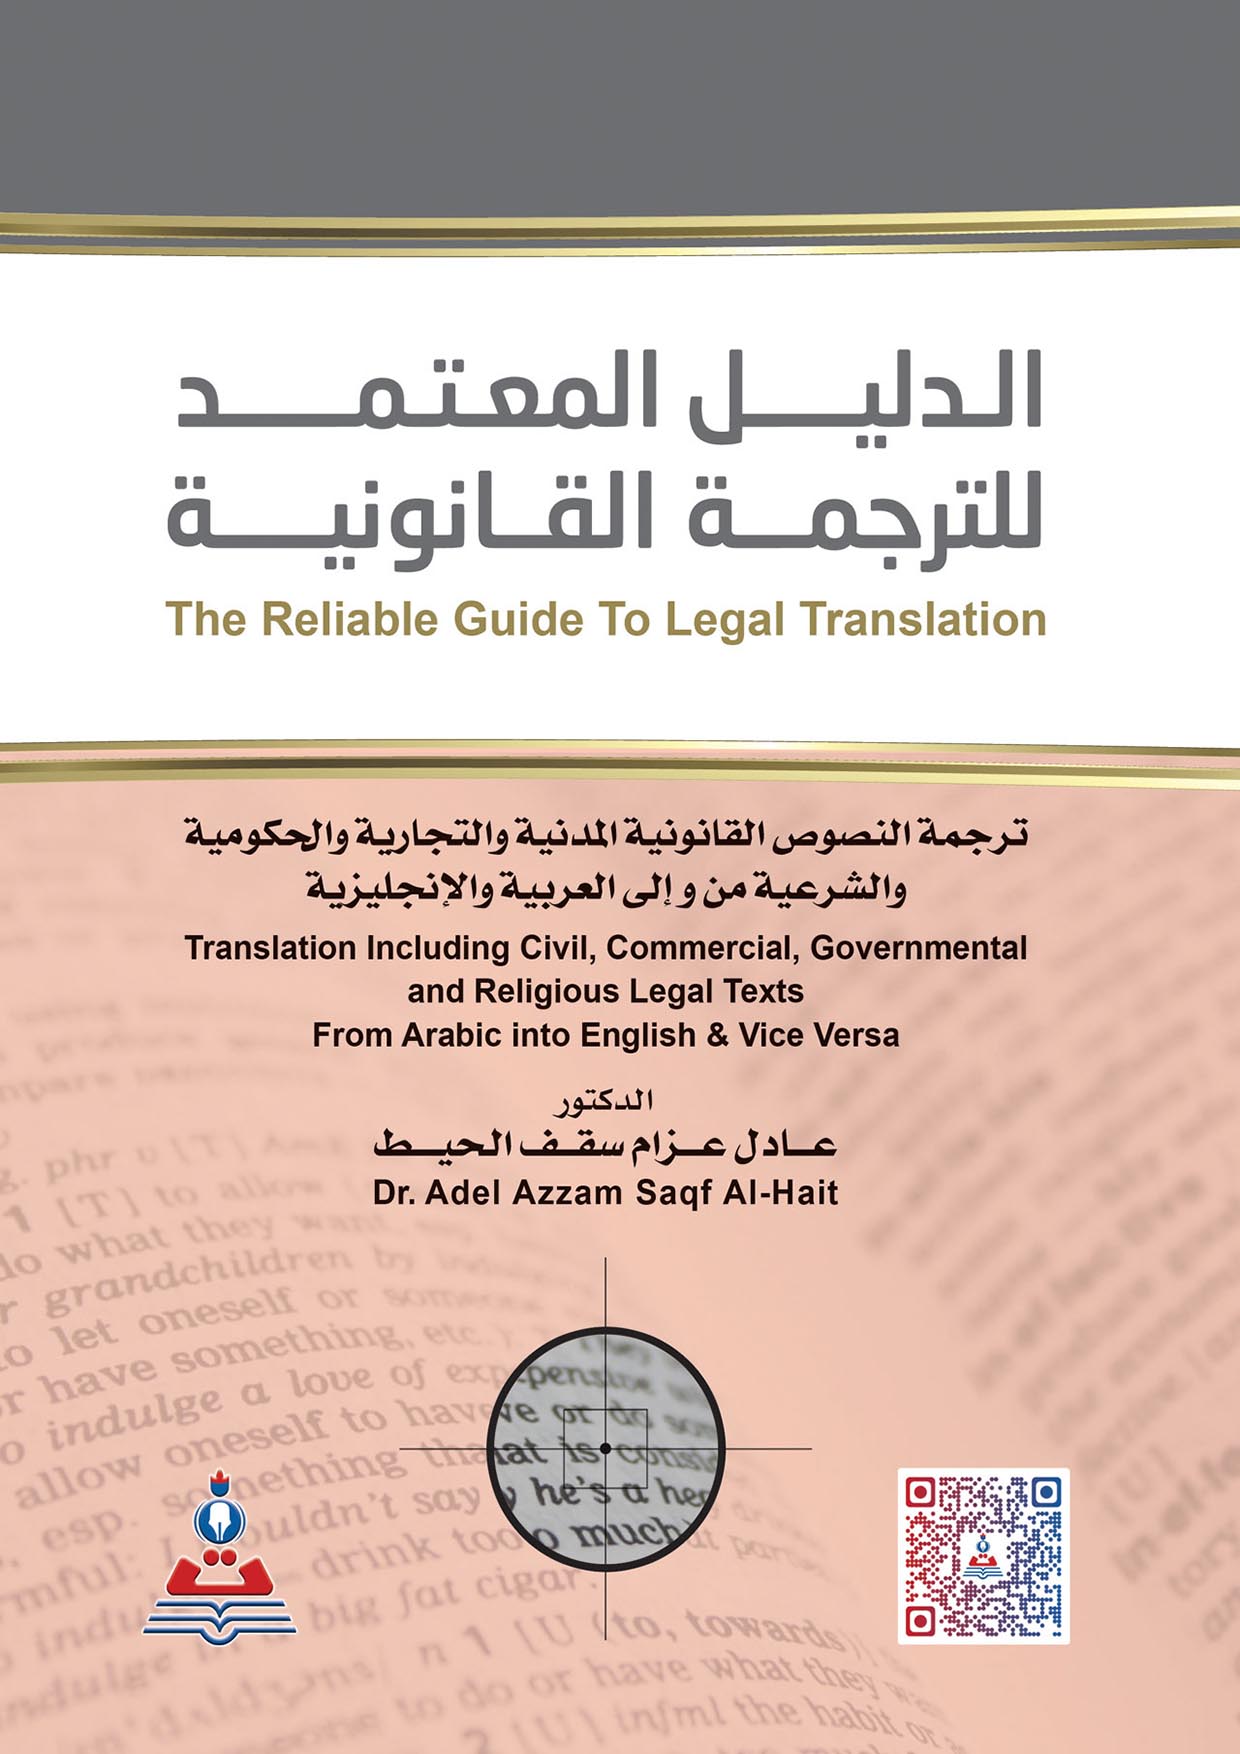 الدليل المعتمد للترجمة القانونية / من والى العربية والانجليزية